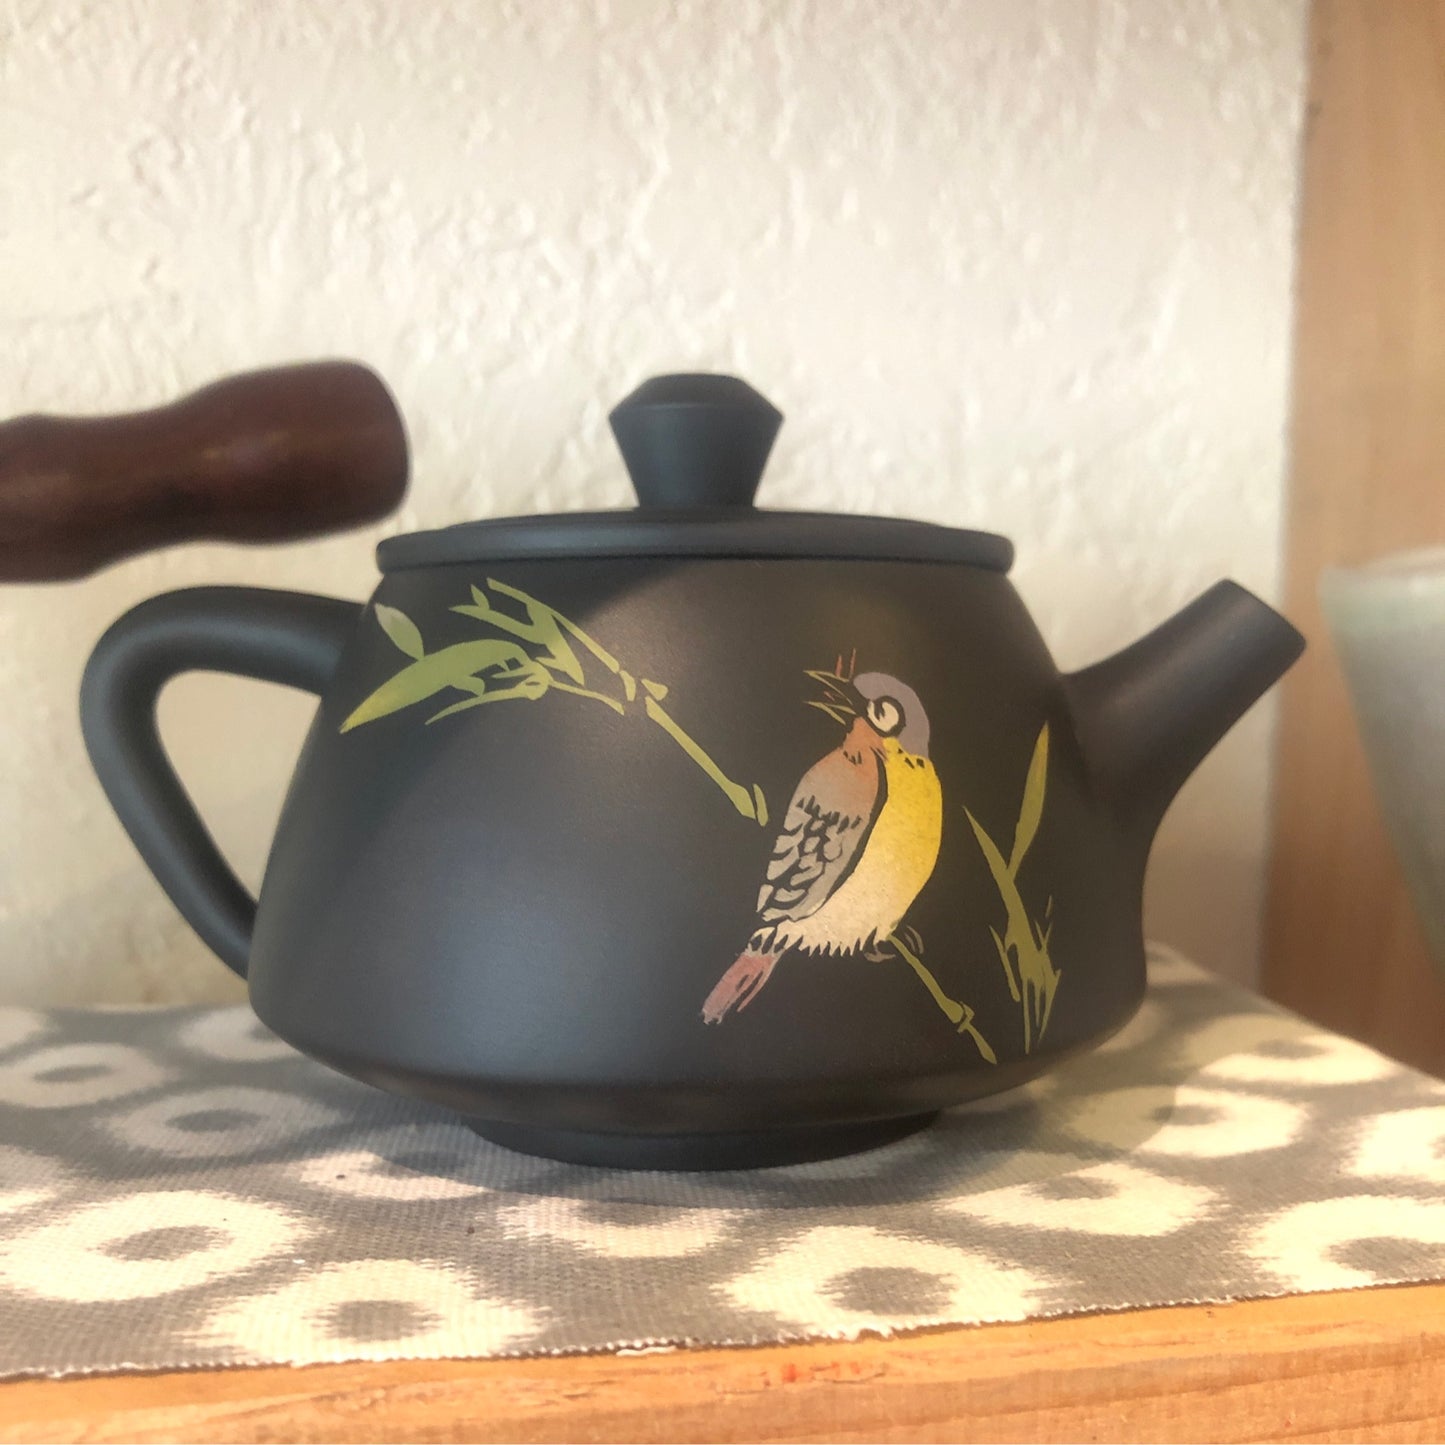 Jian Shui Clay “Qing Xin” Teapot By Yao Yun Chao